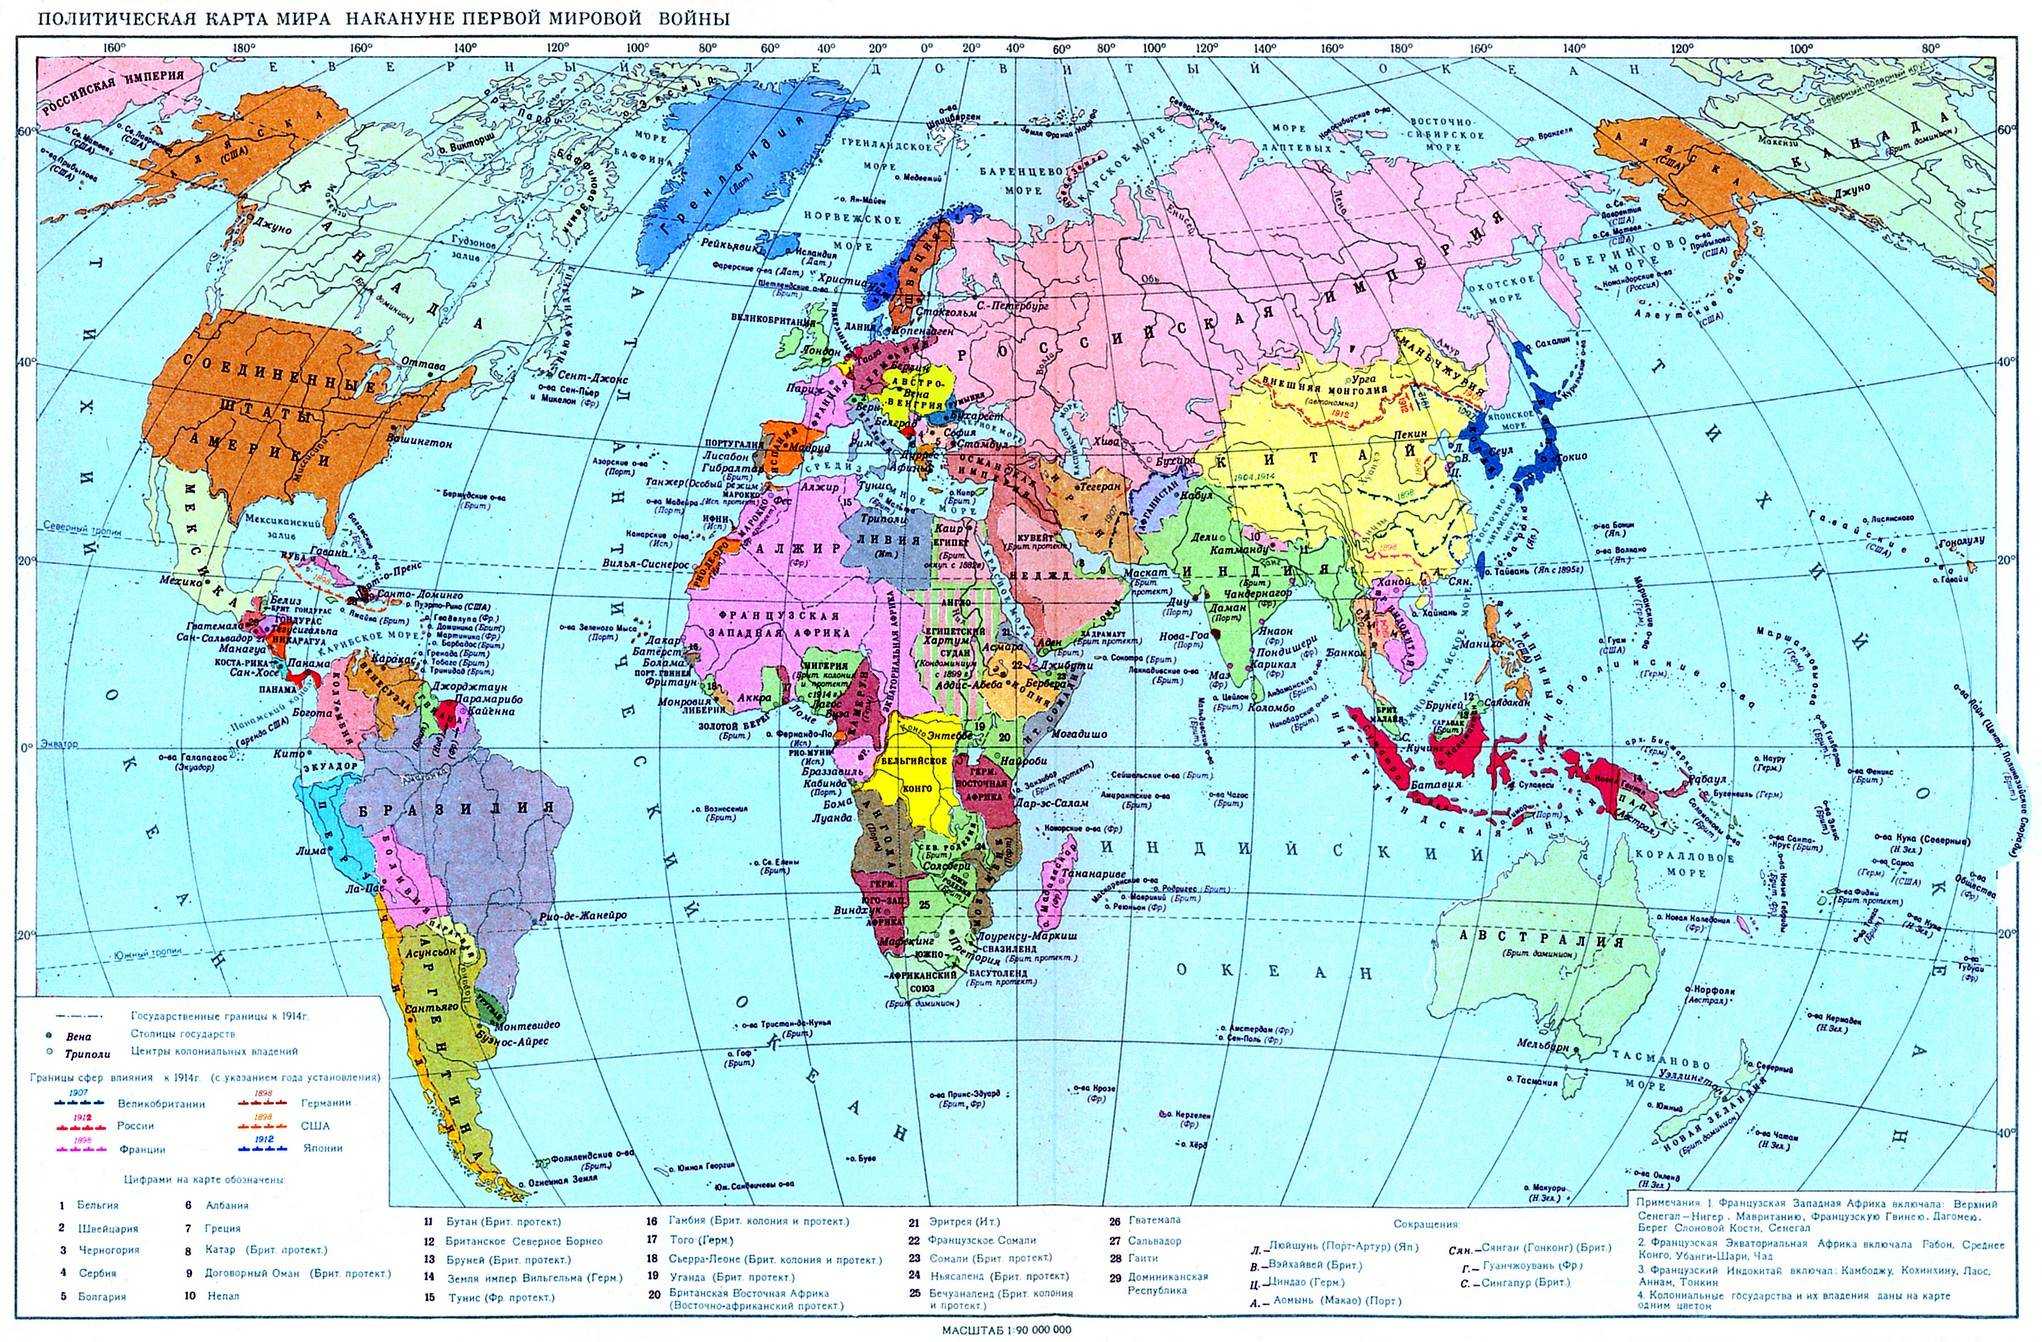 Политическая карта мира накануне накануне Первой мировой войны (1914 год)